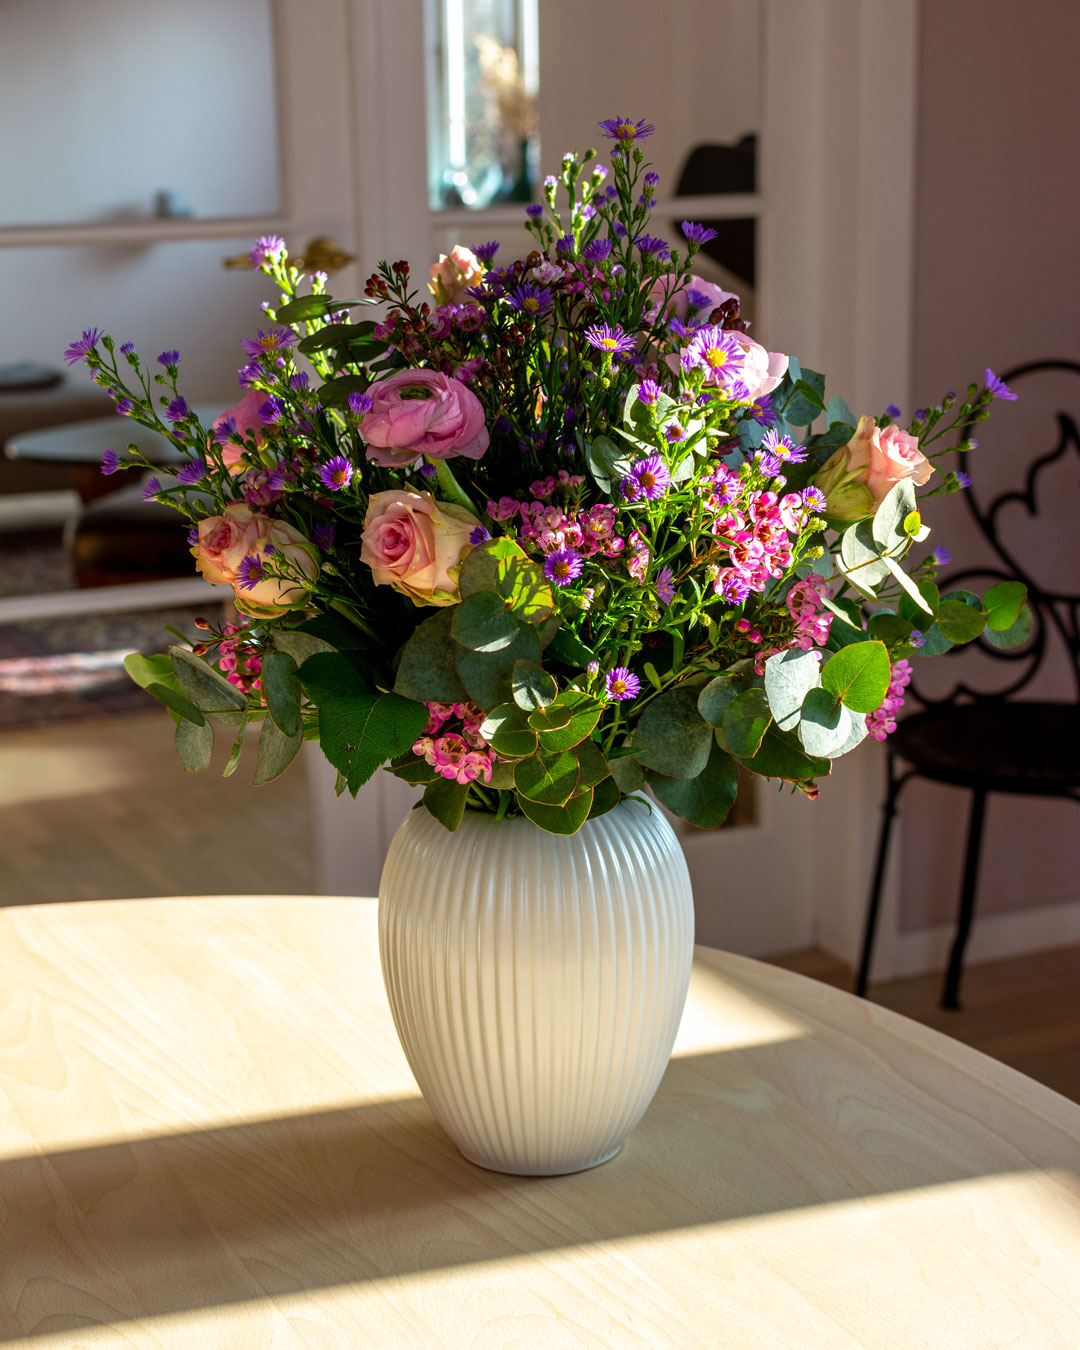 Hvid vase fra Michael Andersen Keramik med blomsterbuket af statice, ranunkler, eukalyptus, roser og astermonarch stående på spisebord i lyst træ